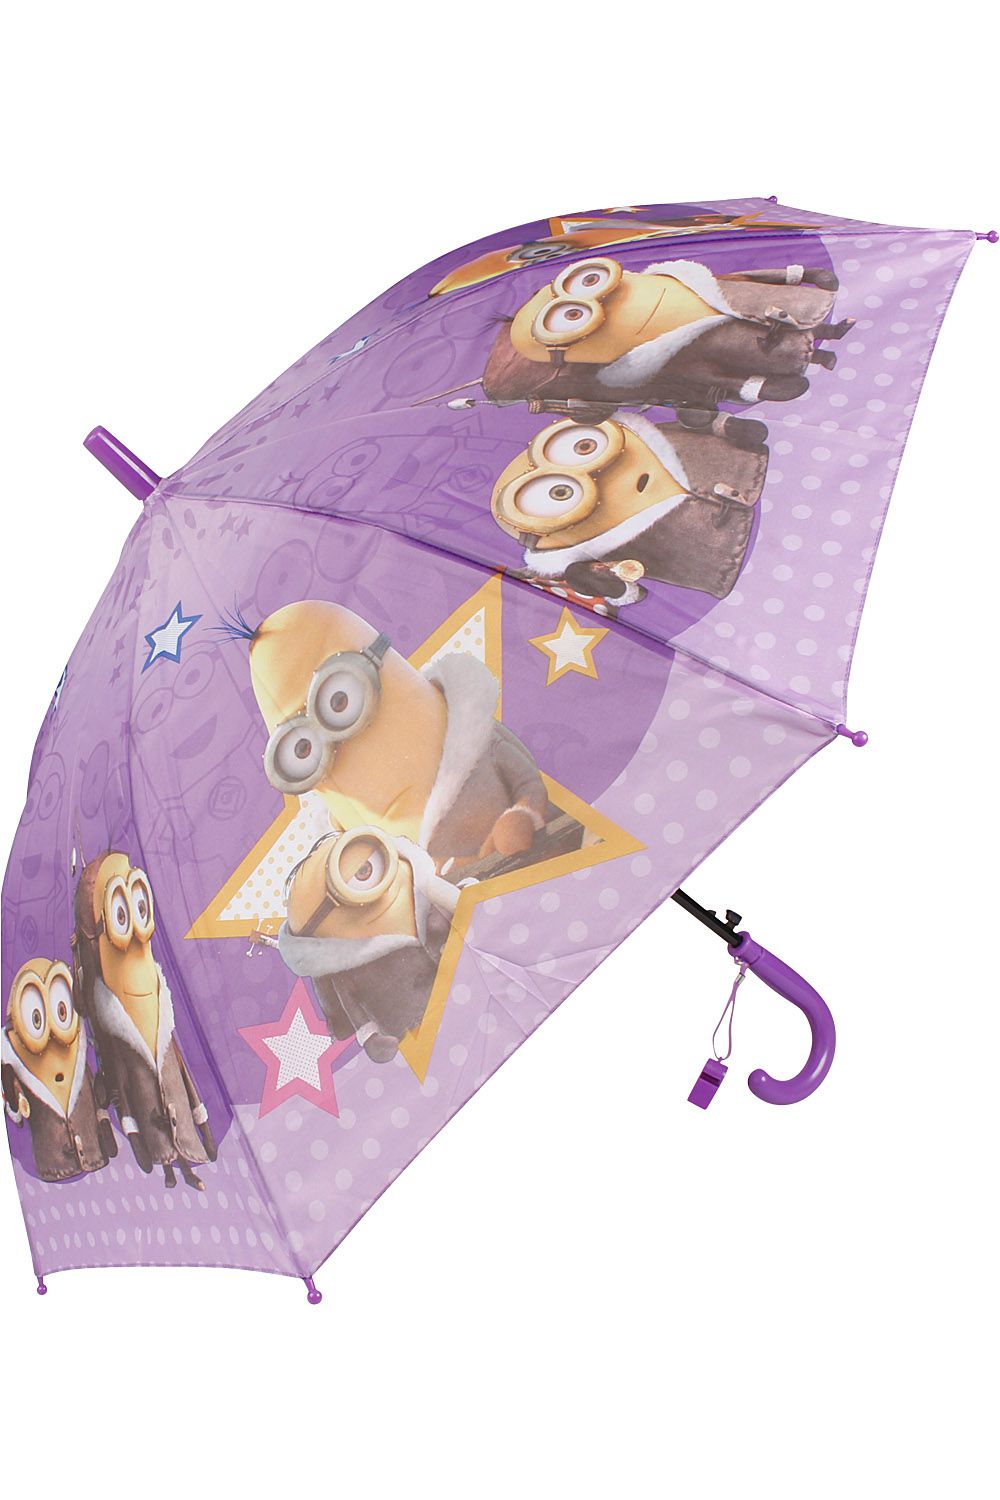 Зонт SR, размер Единый, цвет фиолетовый